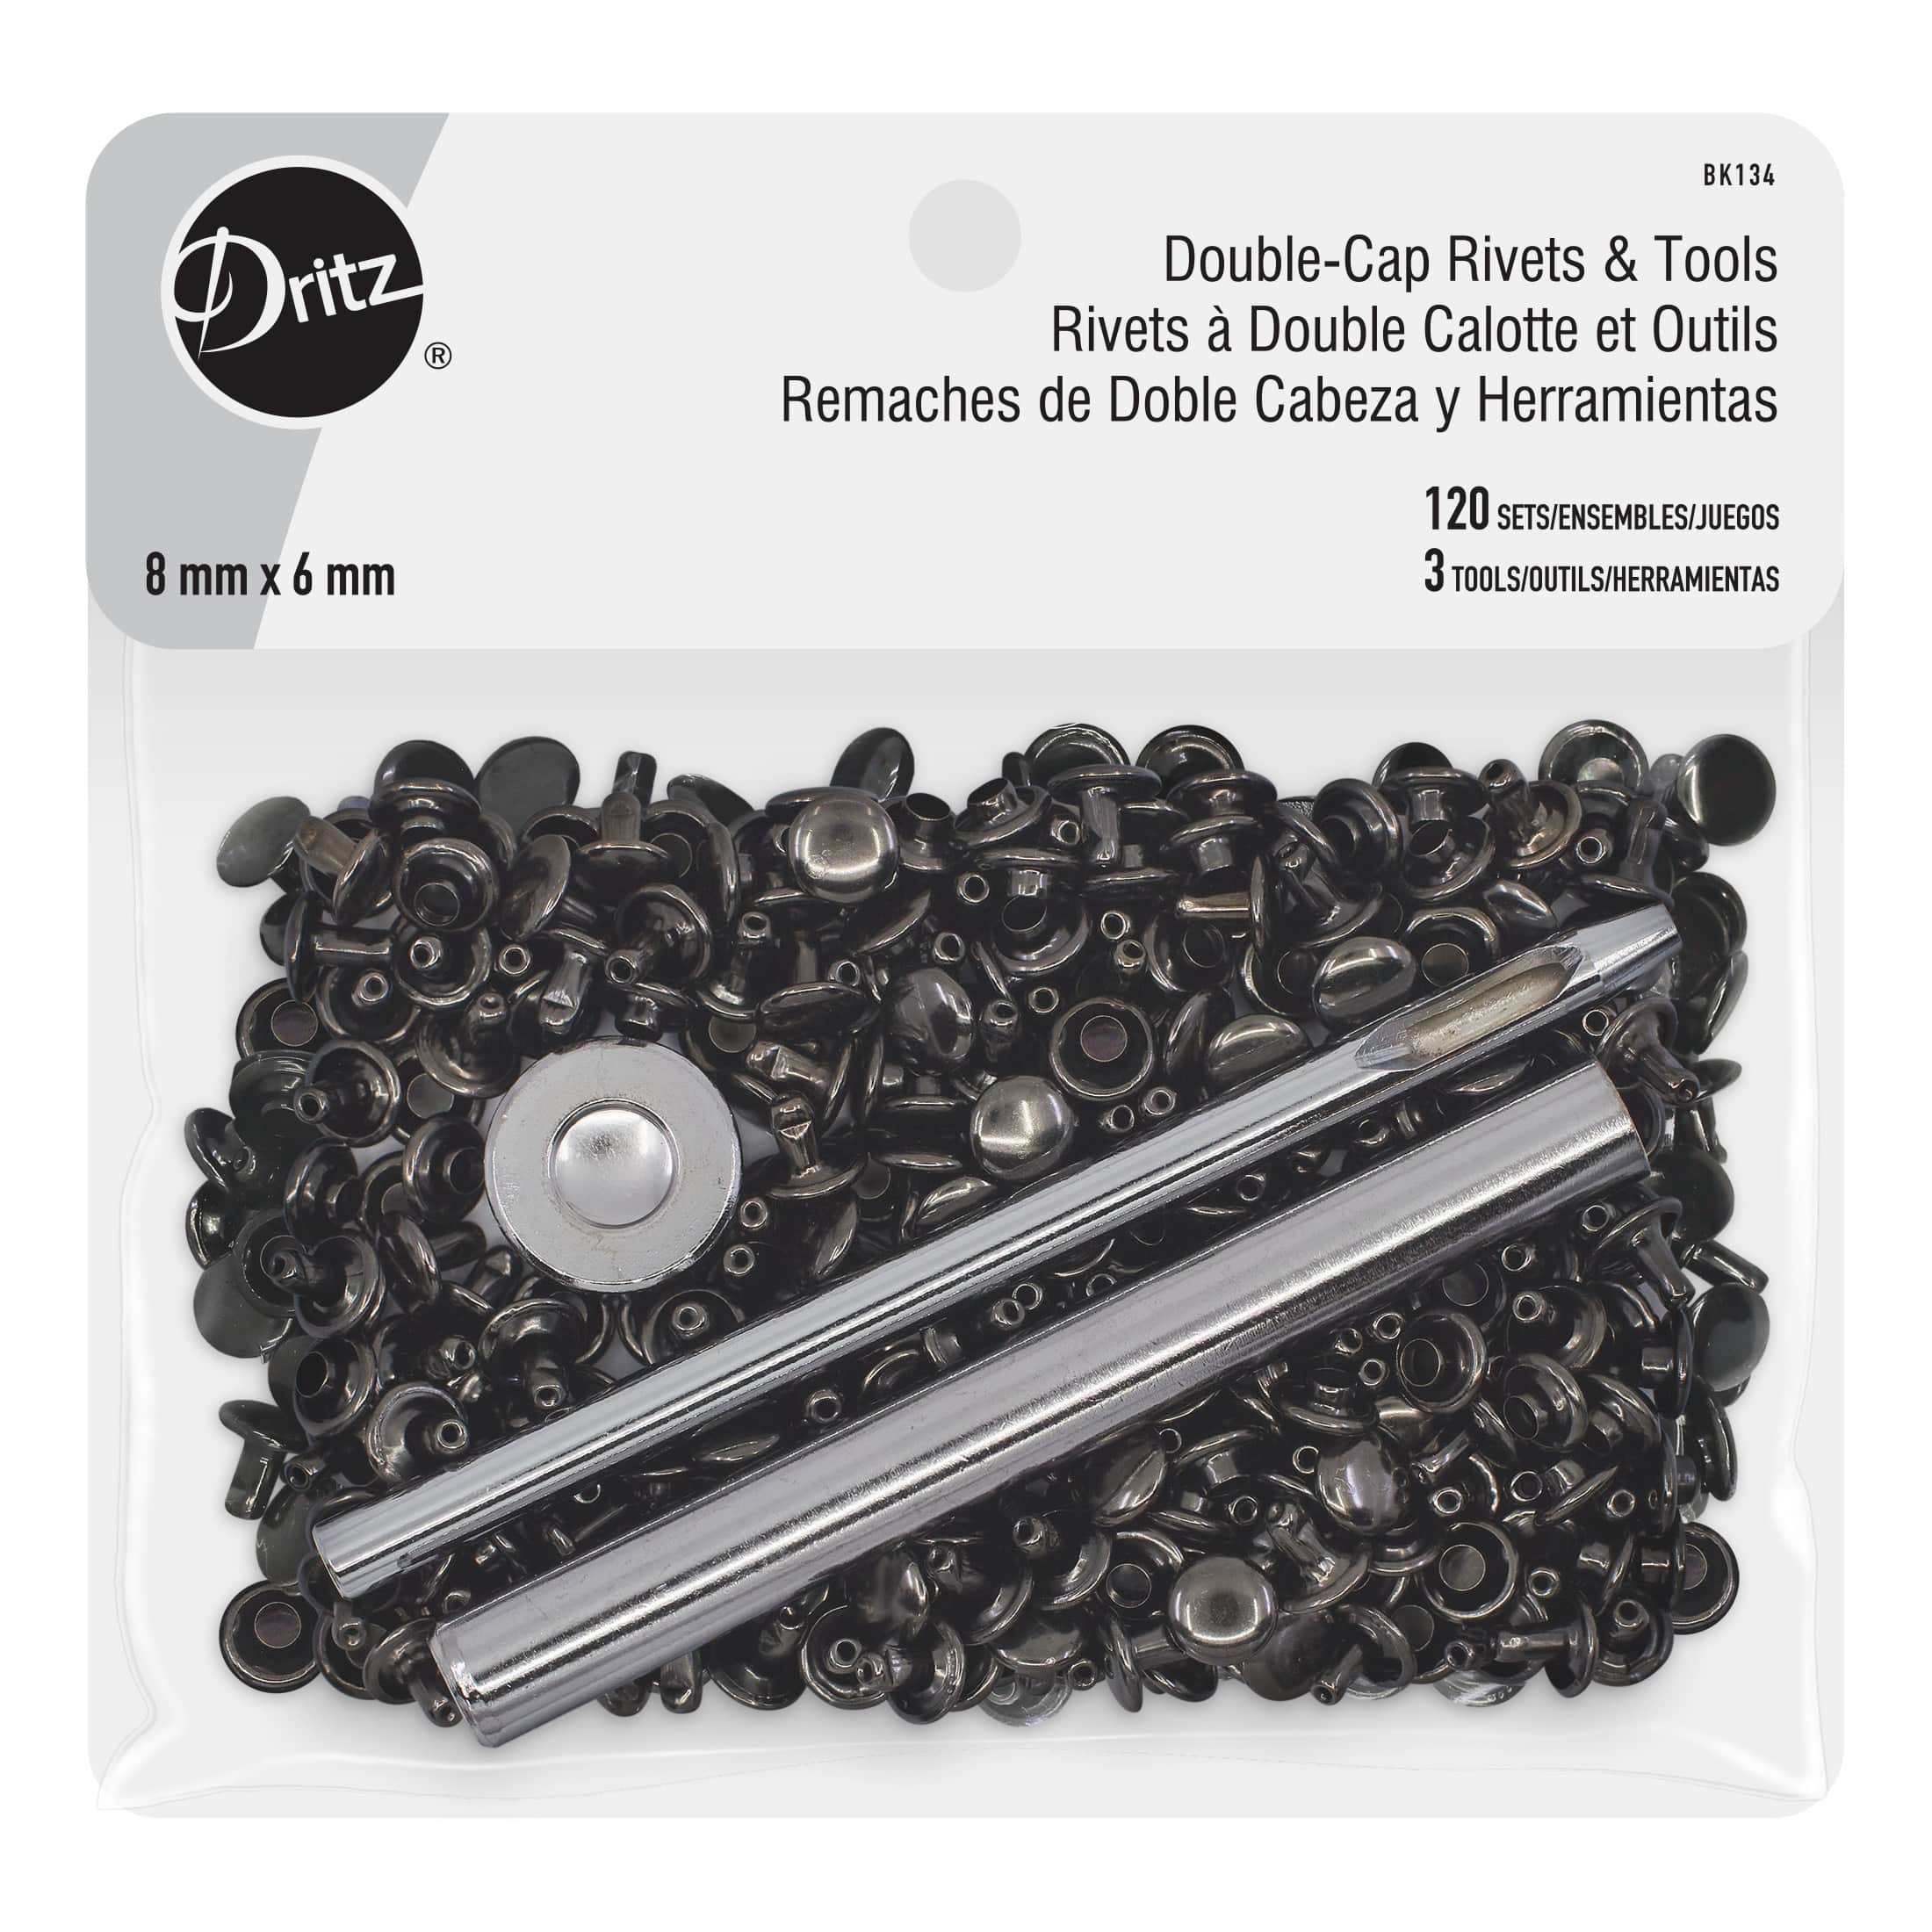 Dritz Double-Cap Rivets & Tools, 120 Sets Gunmetal